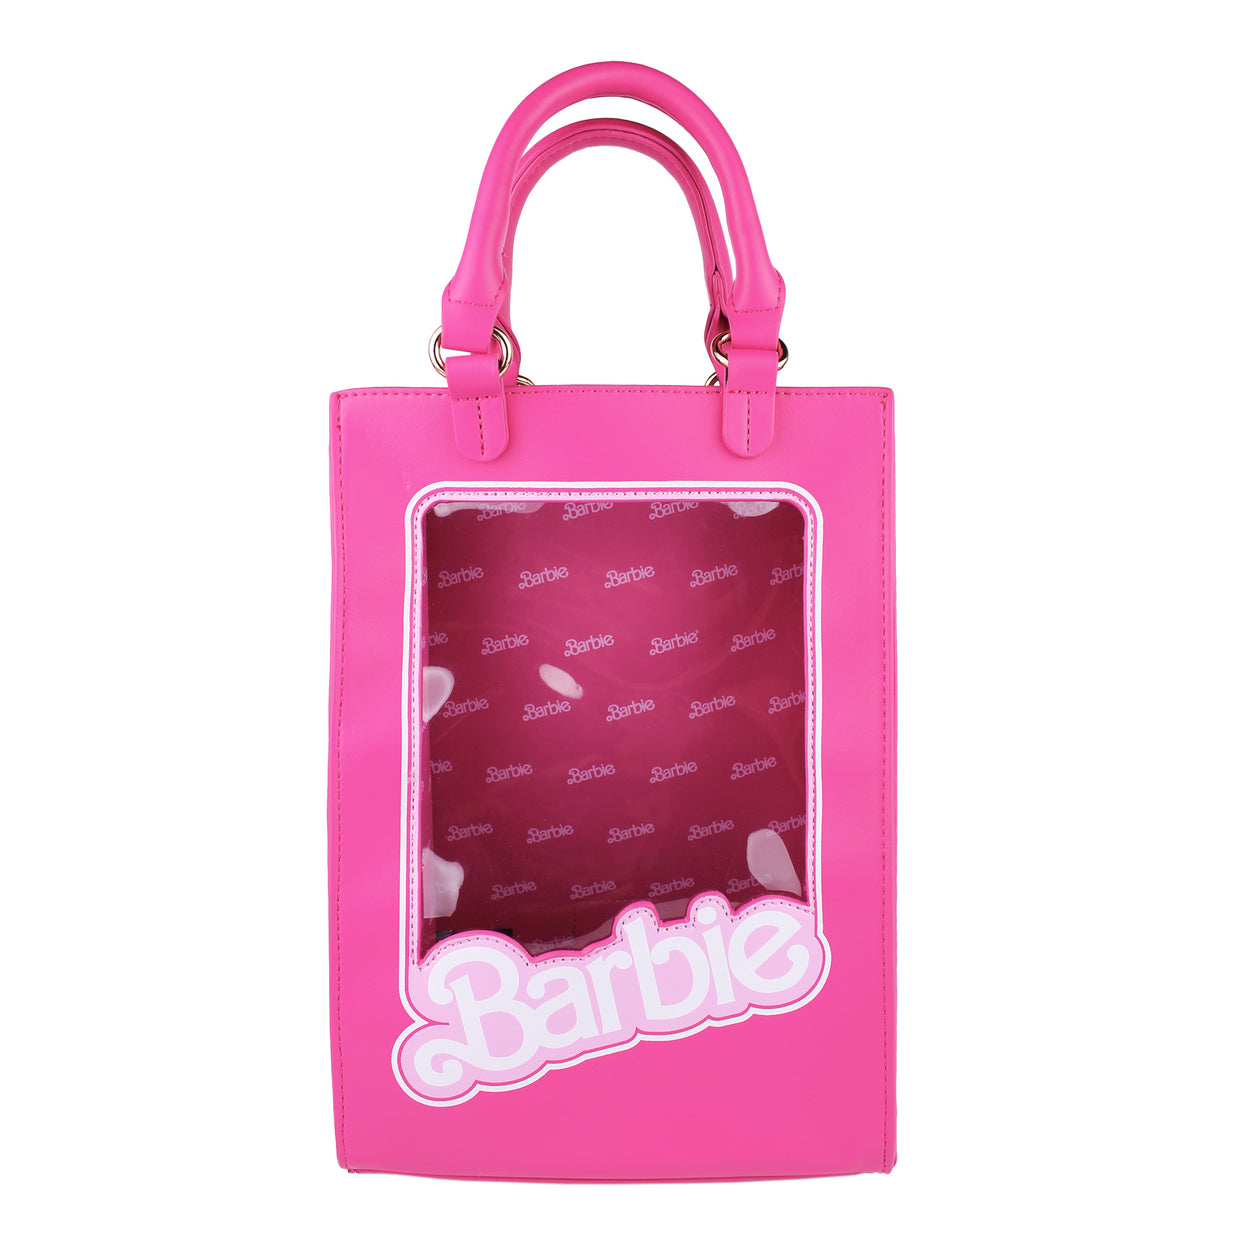 Get Box sling at ₹ 1250 | LBB Shop